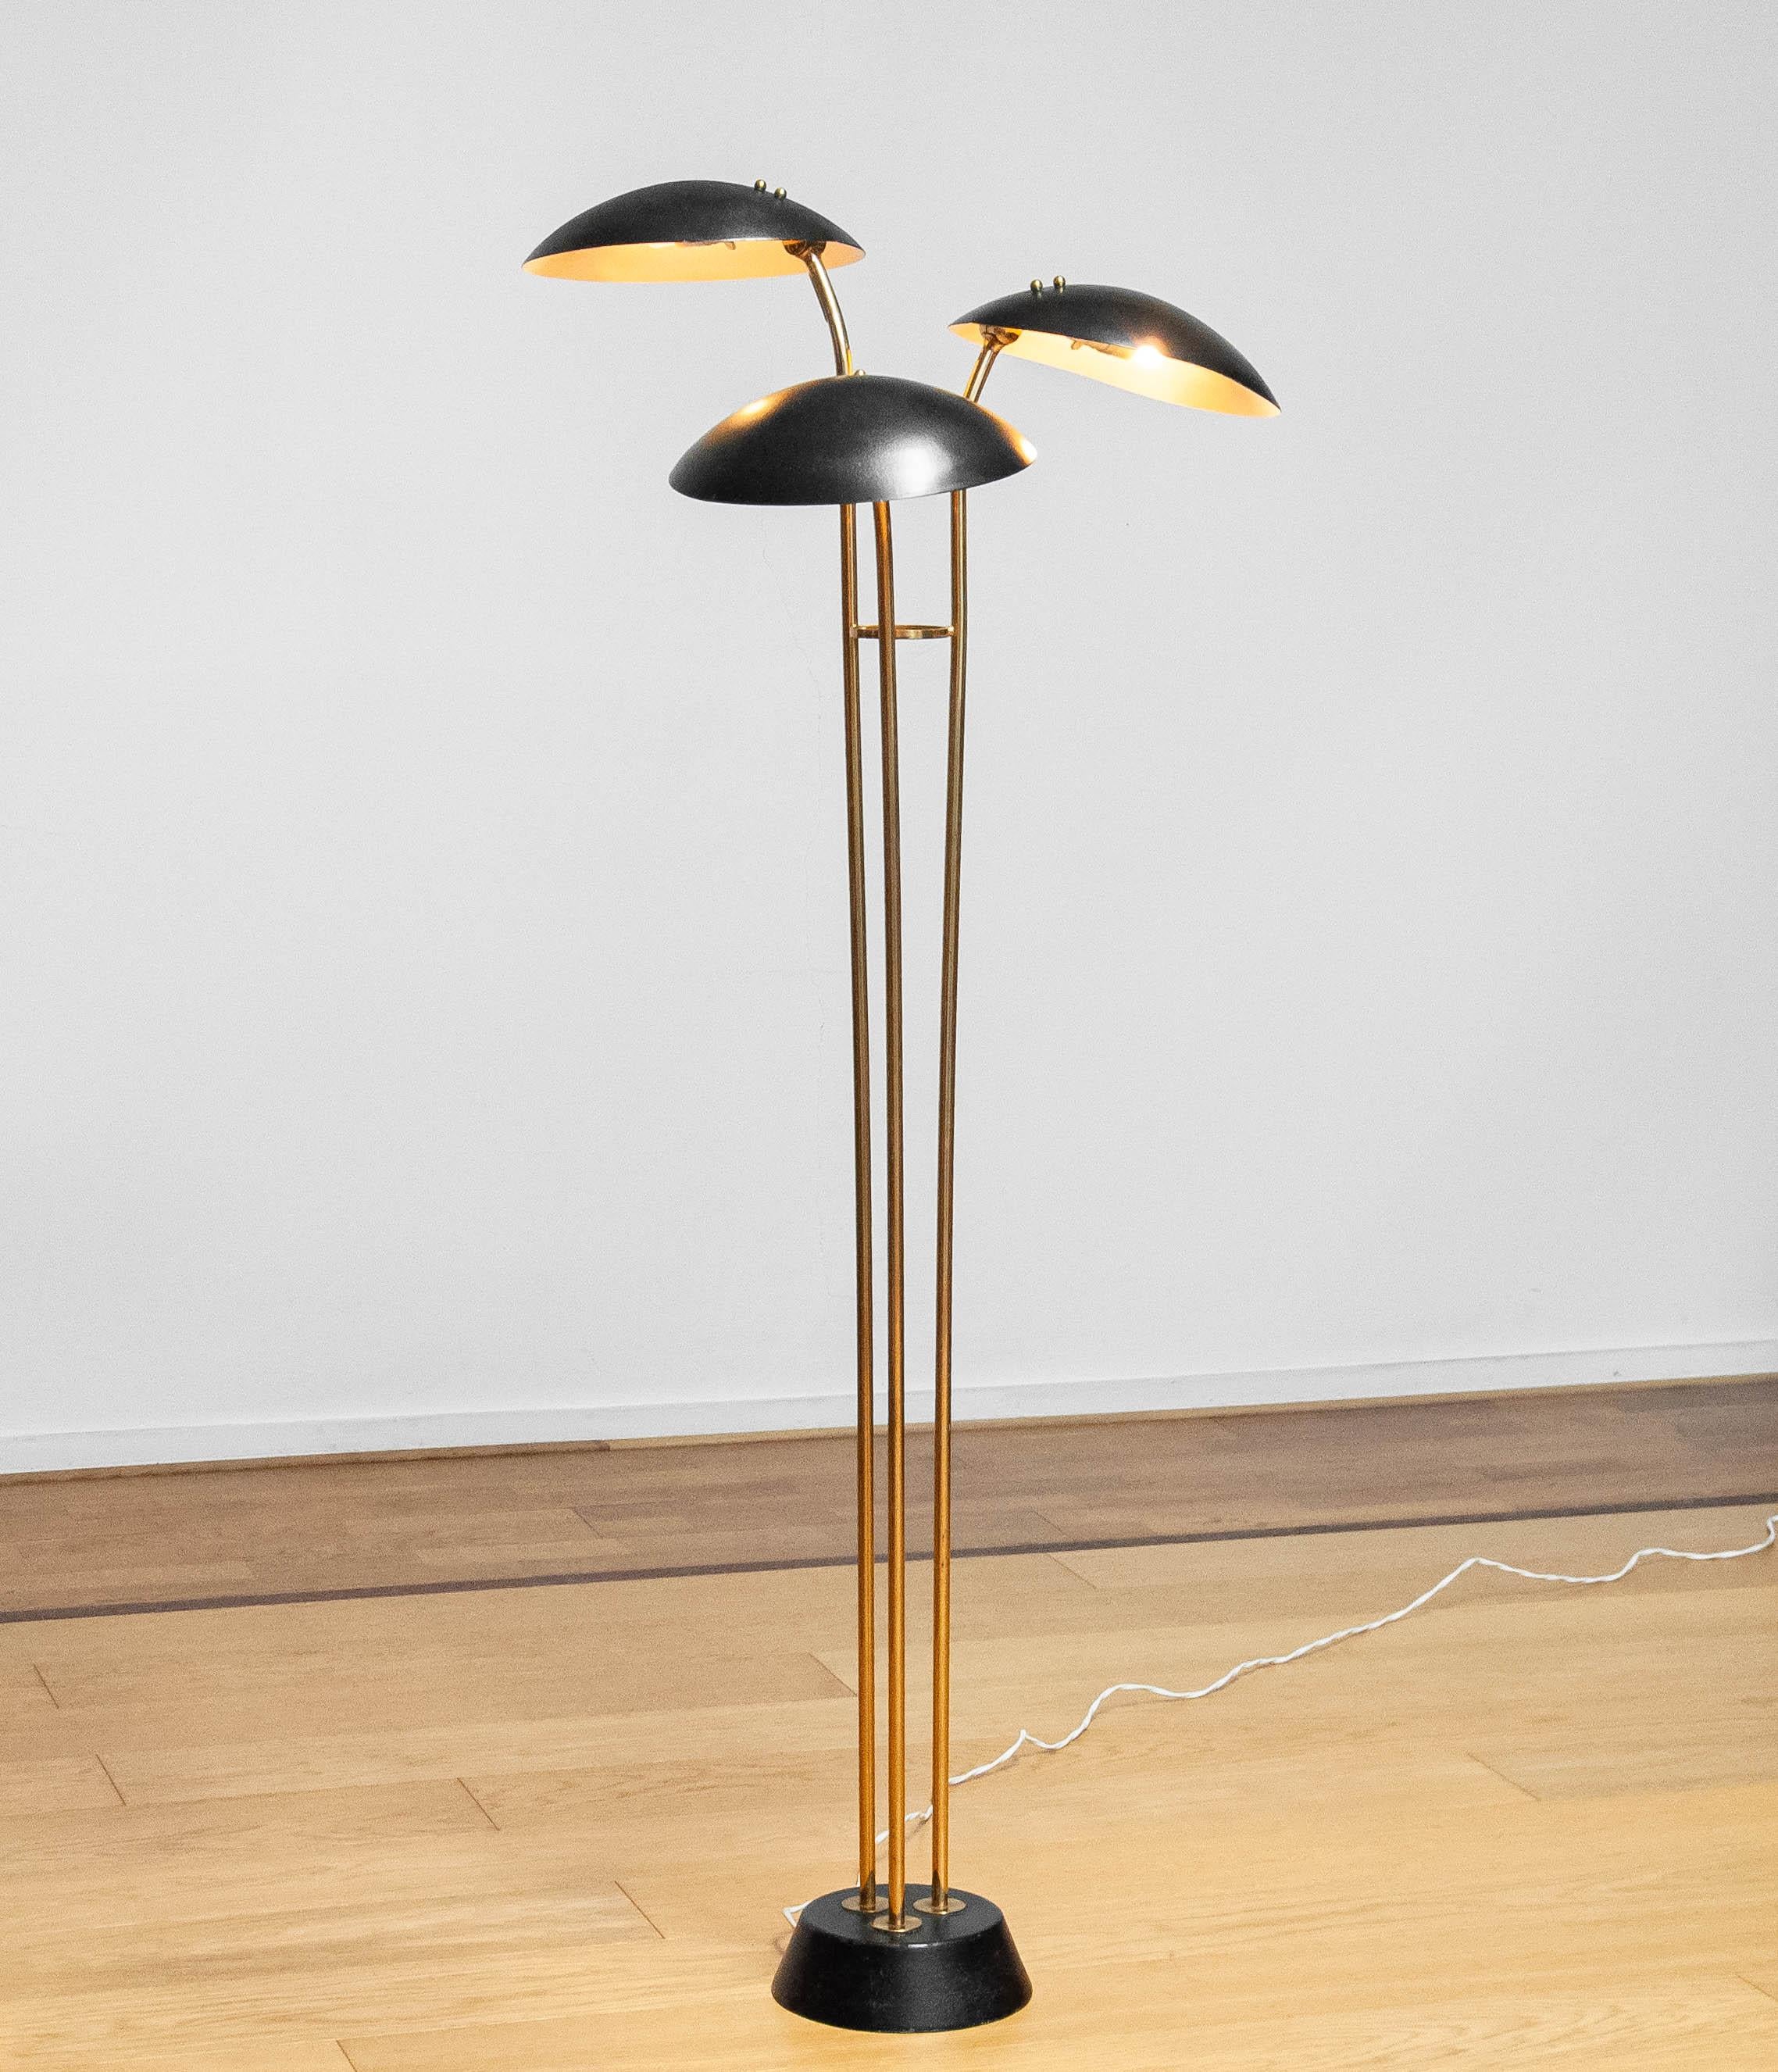 Magnifique et très rare lampadaire en laiton avec trois abat-jours en métal laqué noir ( Modèle : 74585 ) fabriqué par les frères Malmström pour Bröderna Malmströms metallvarufabrik à Malmö en Suède dans les années 1950. 
La forme et le design